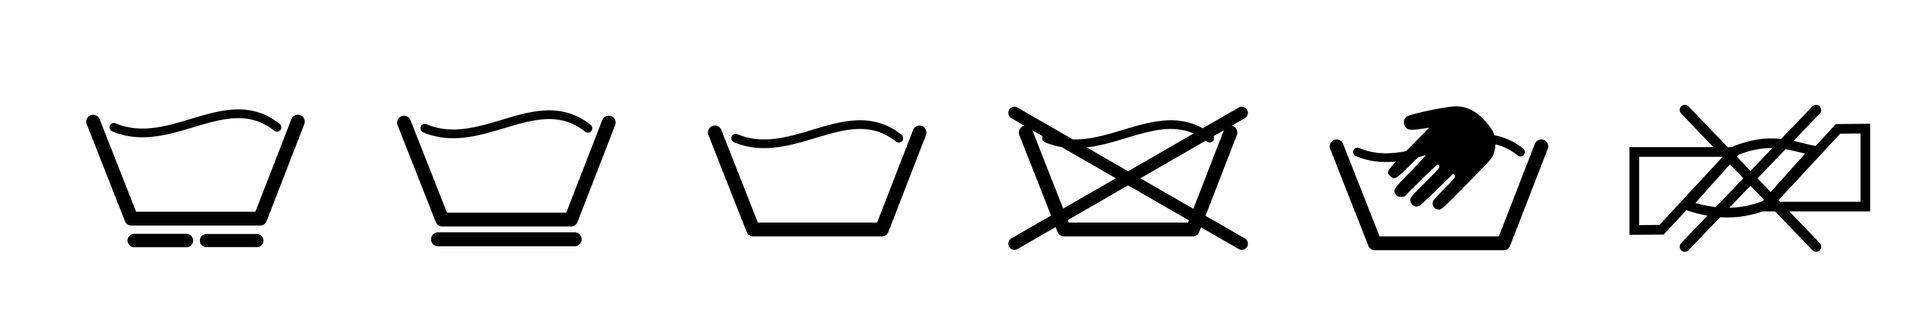 Significado dos símbolos de lavagem: guia completo